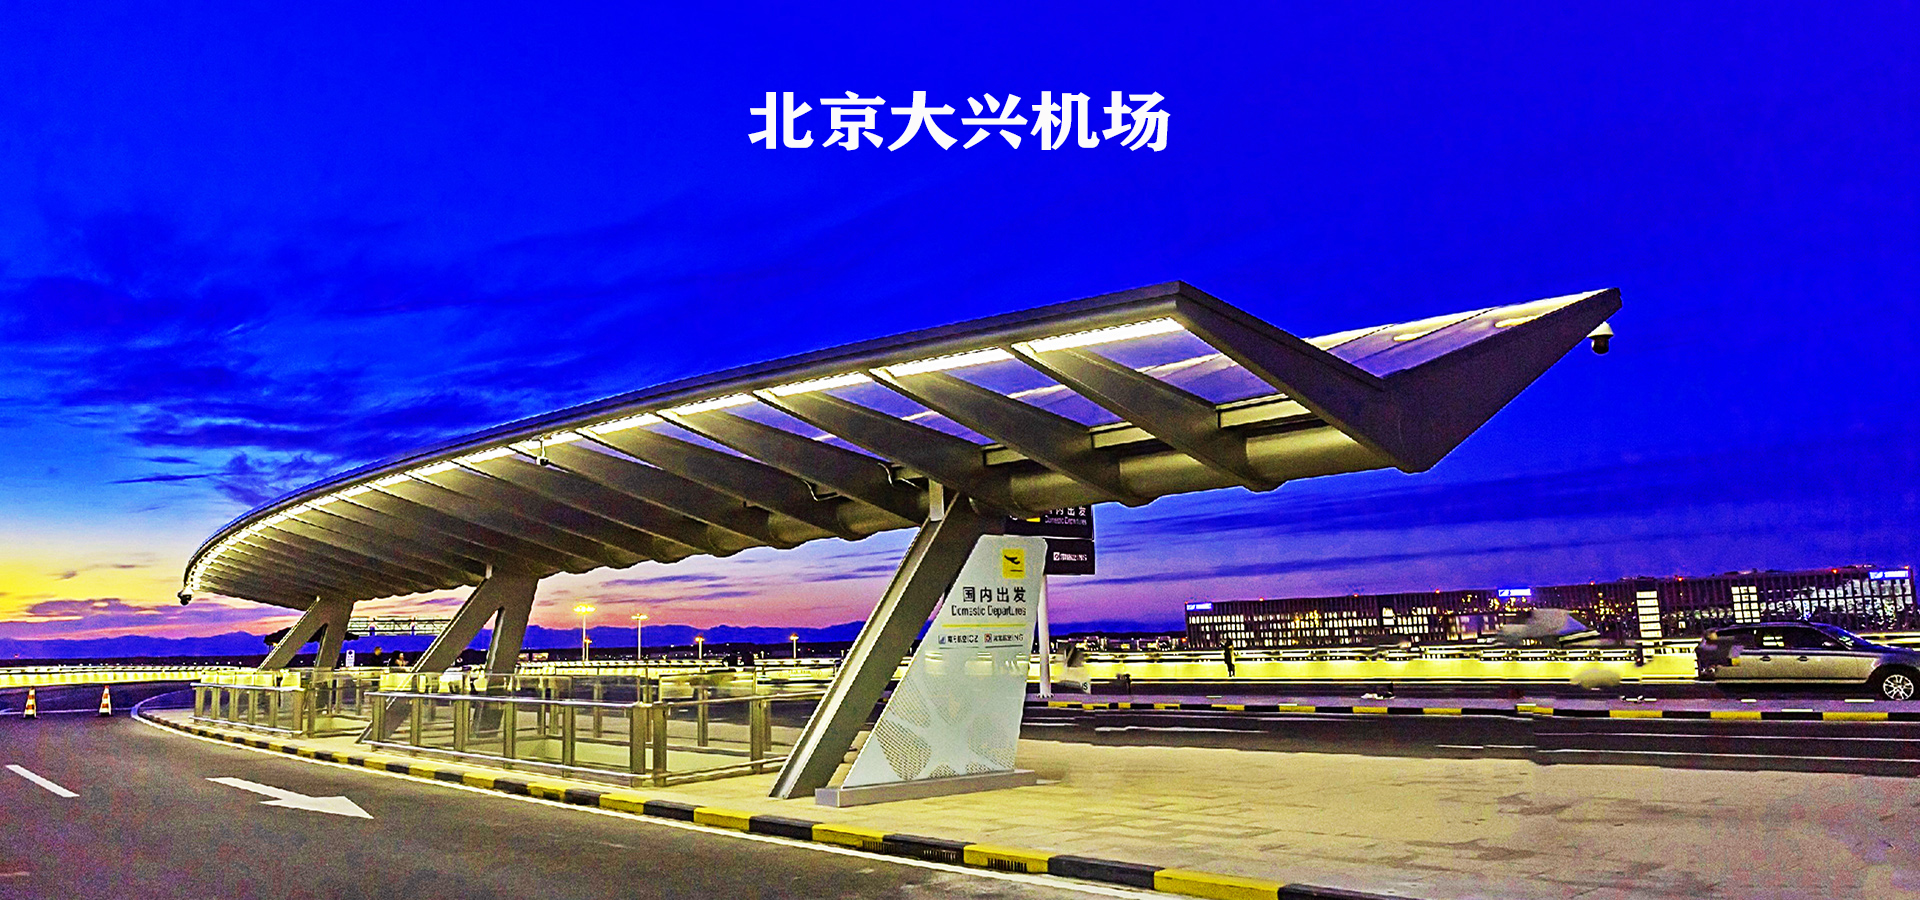 2019年北京大兴国际机场